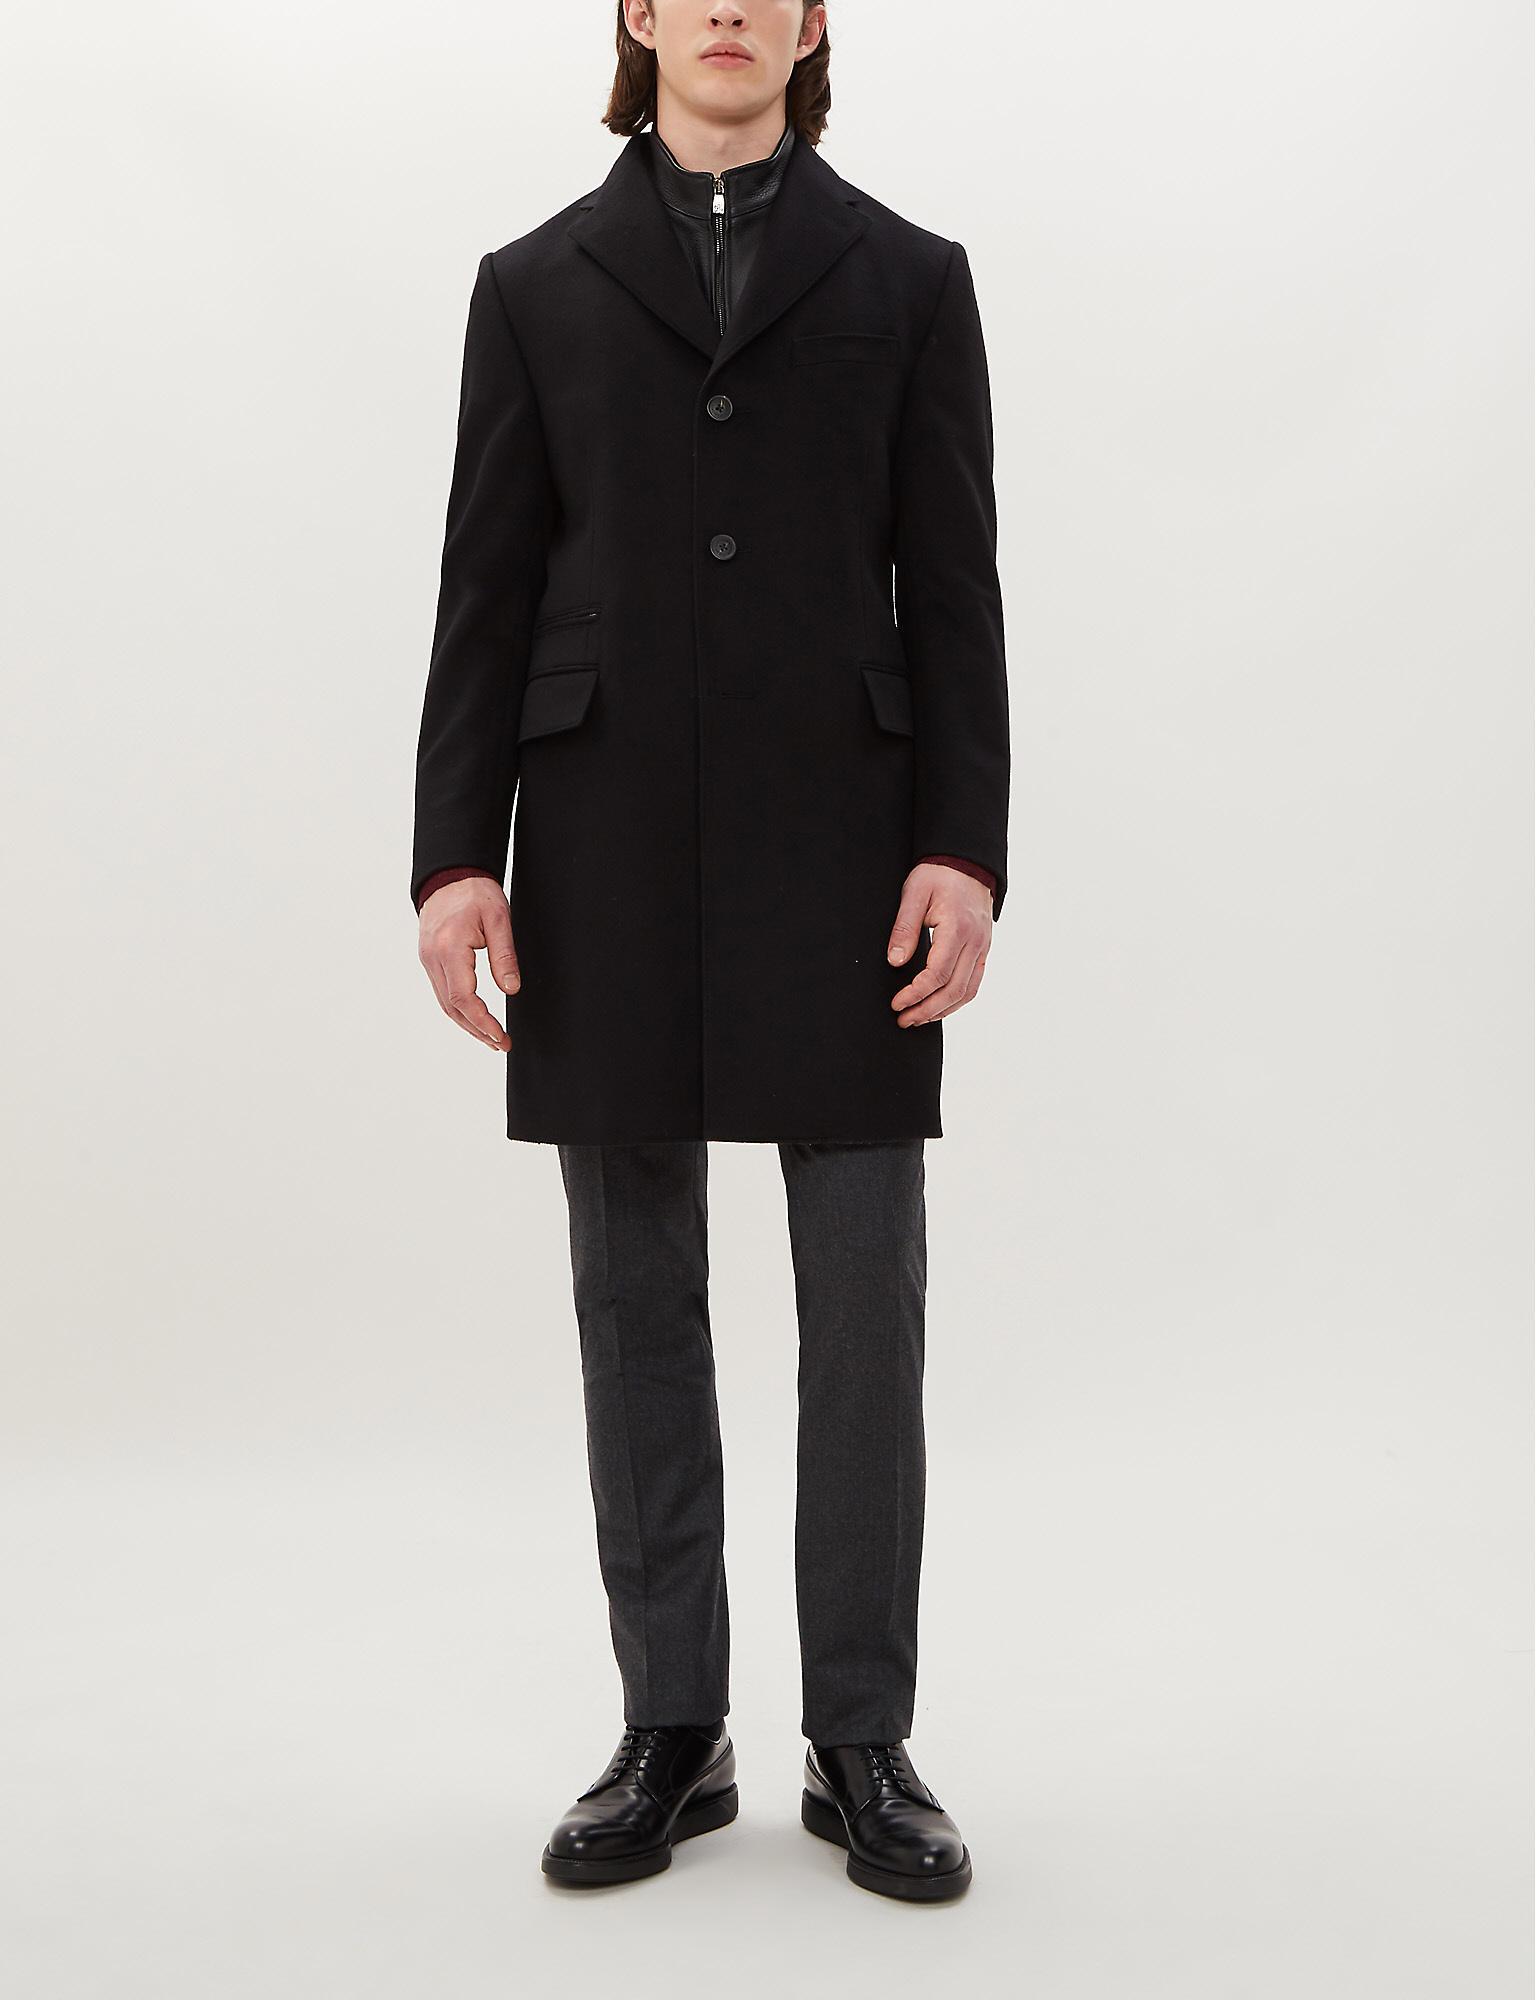 Corneliani Id Wool Overcoat in Black for Men - Lyst